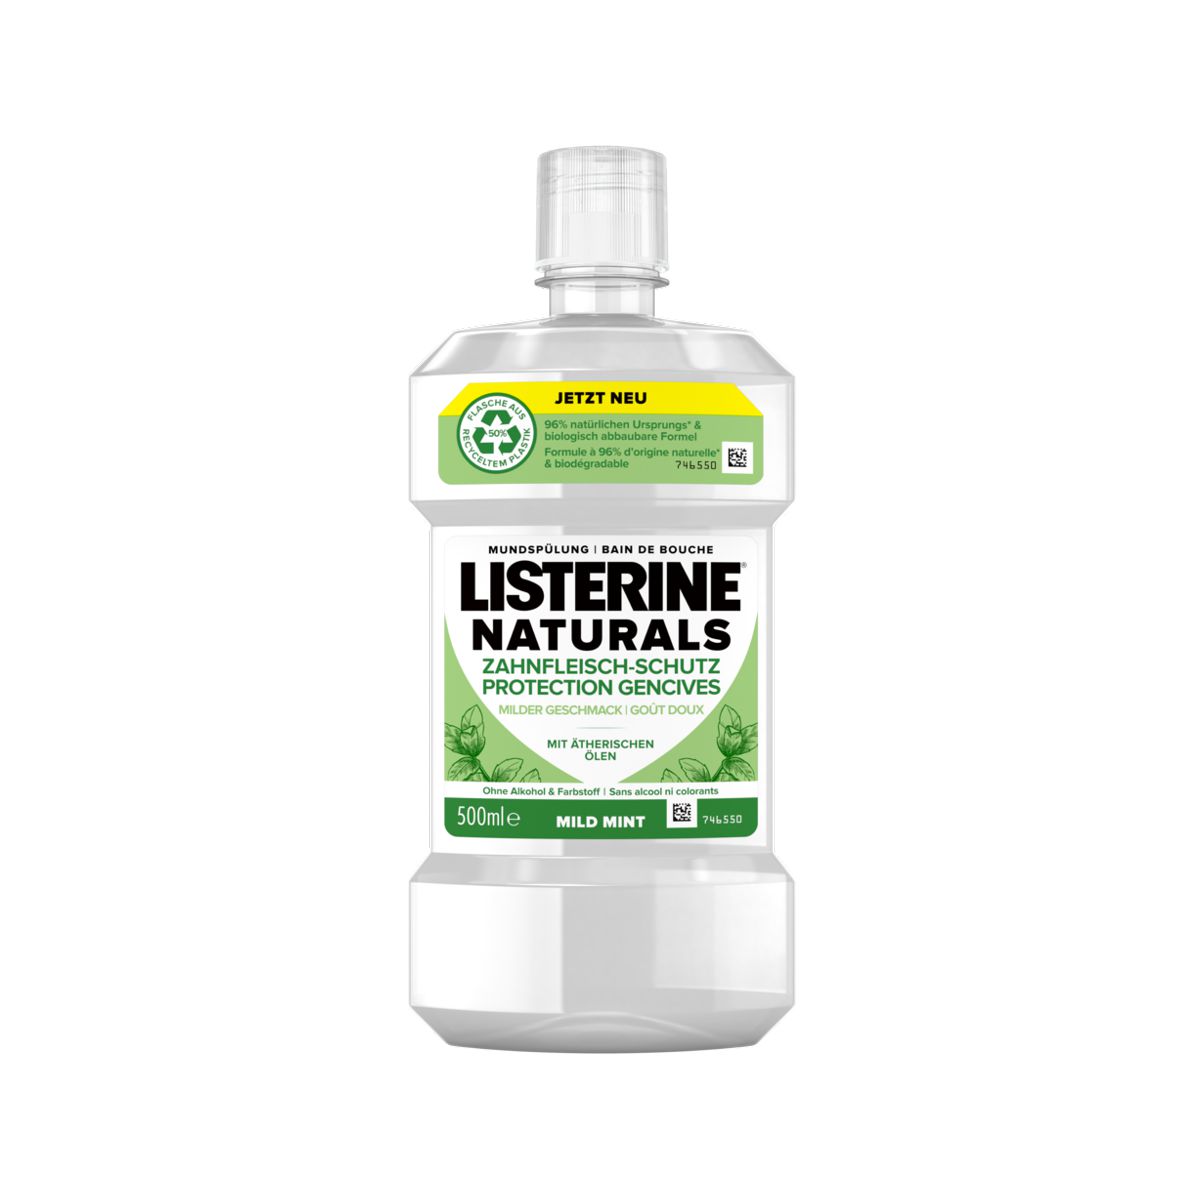 Listerine Naturals Zahnfleisch-Schutz 500 ml